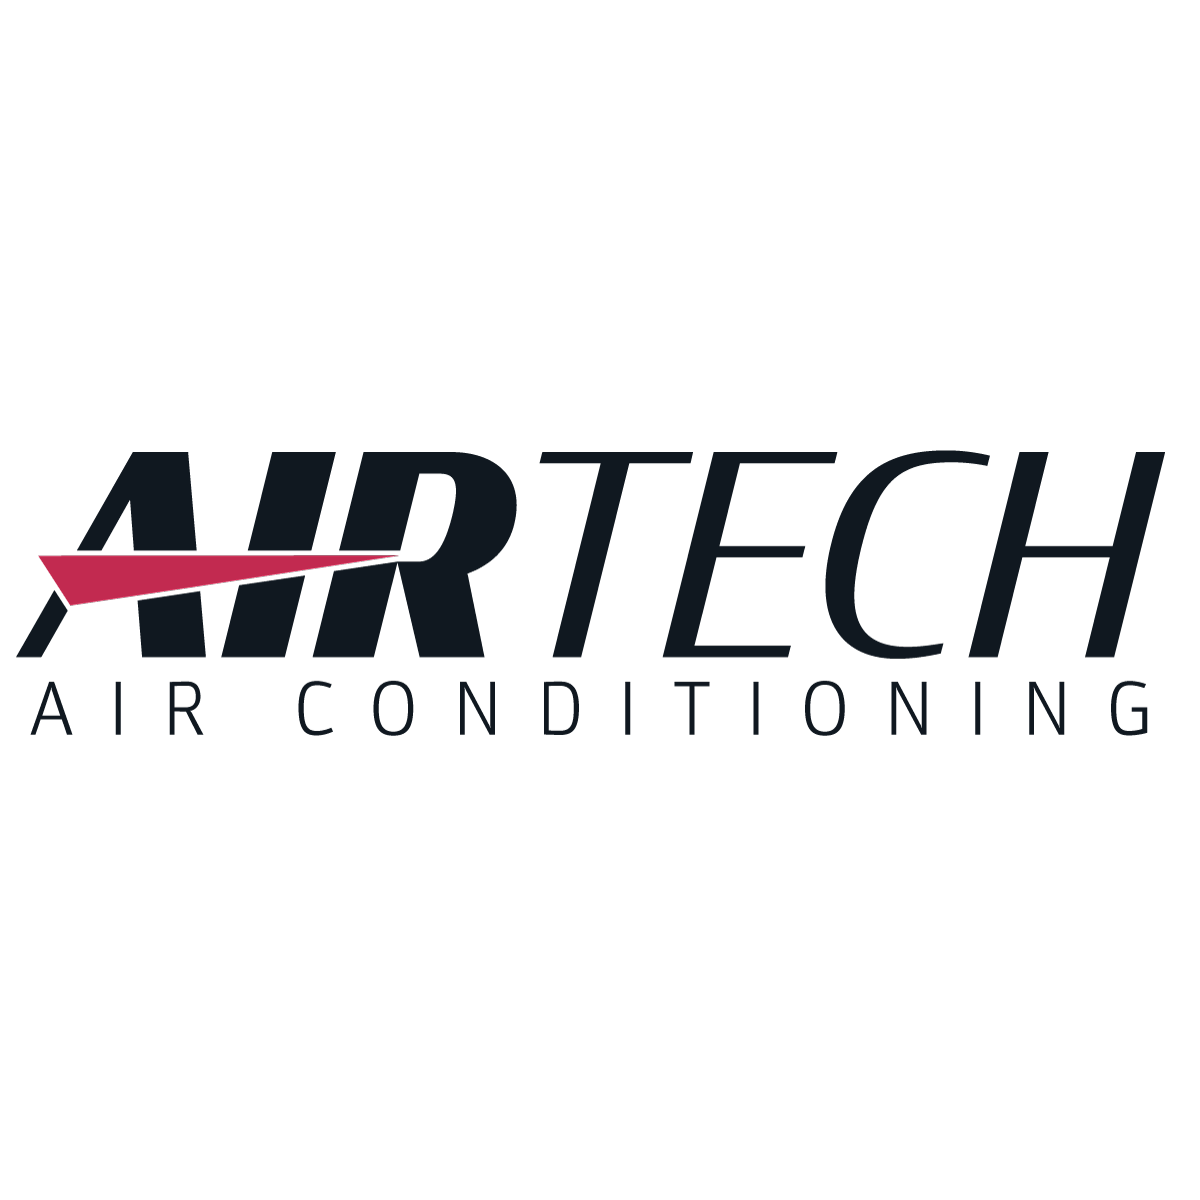 Airtech Pty Ltd - Woodcroft, SA - (08) 8276 8555 | ShowMeLocal.com